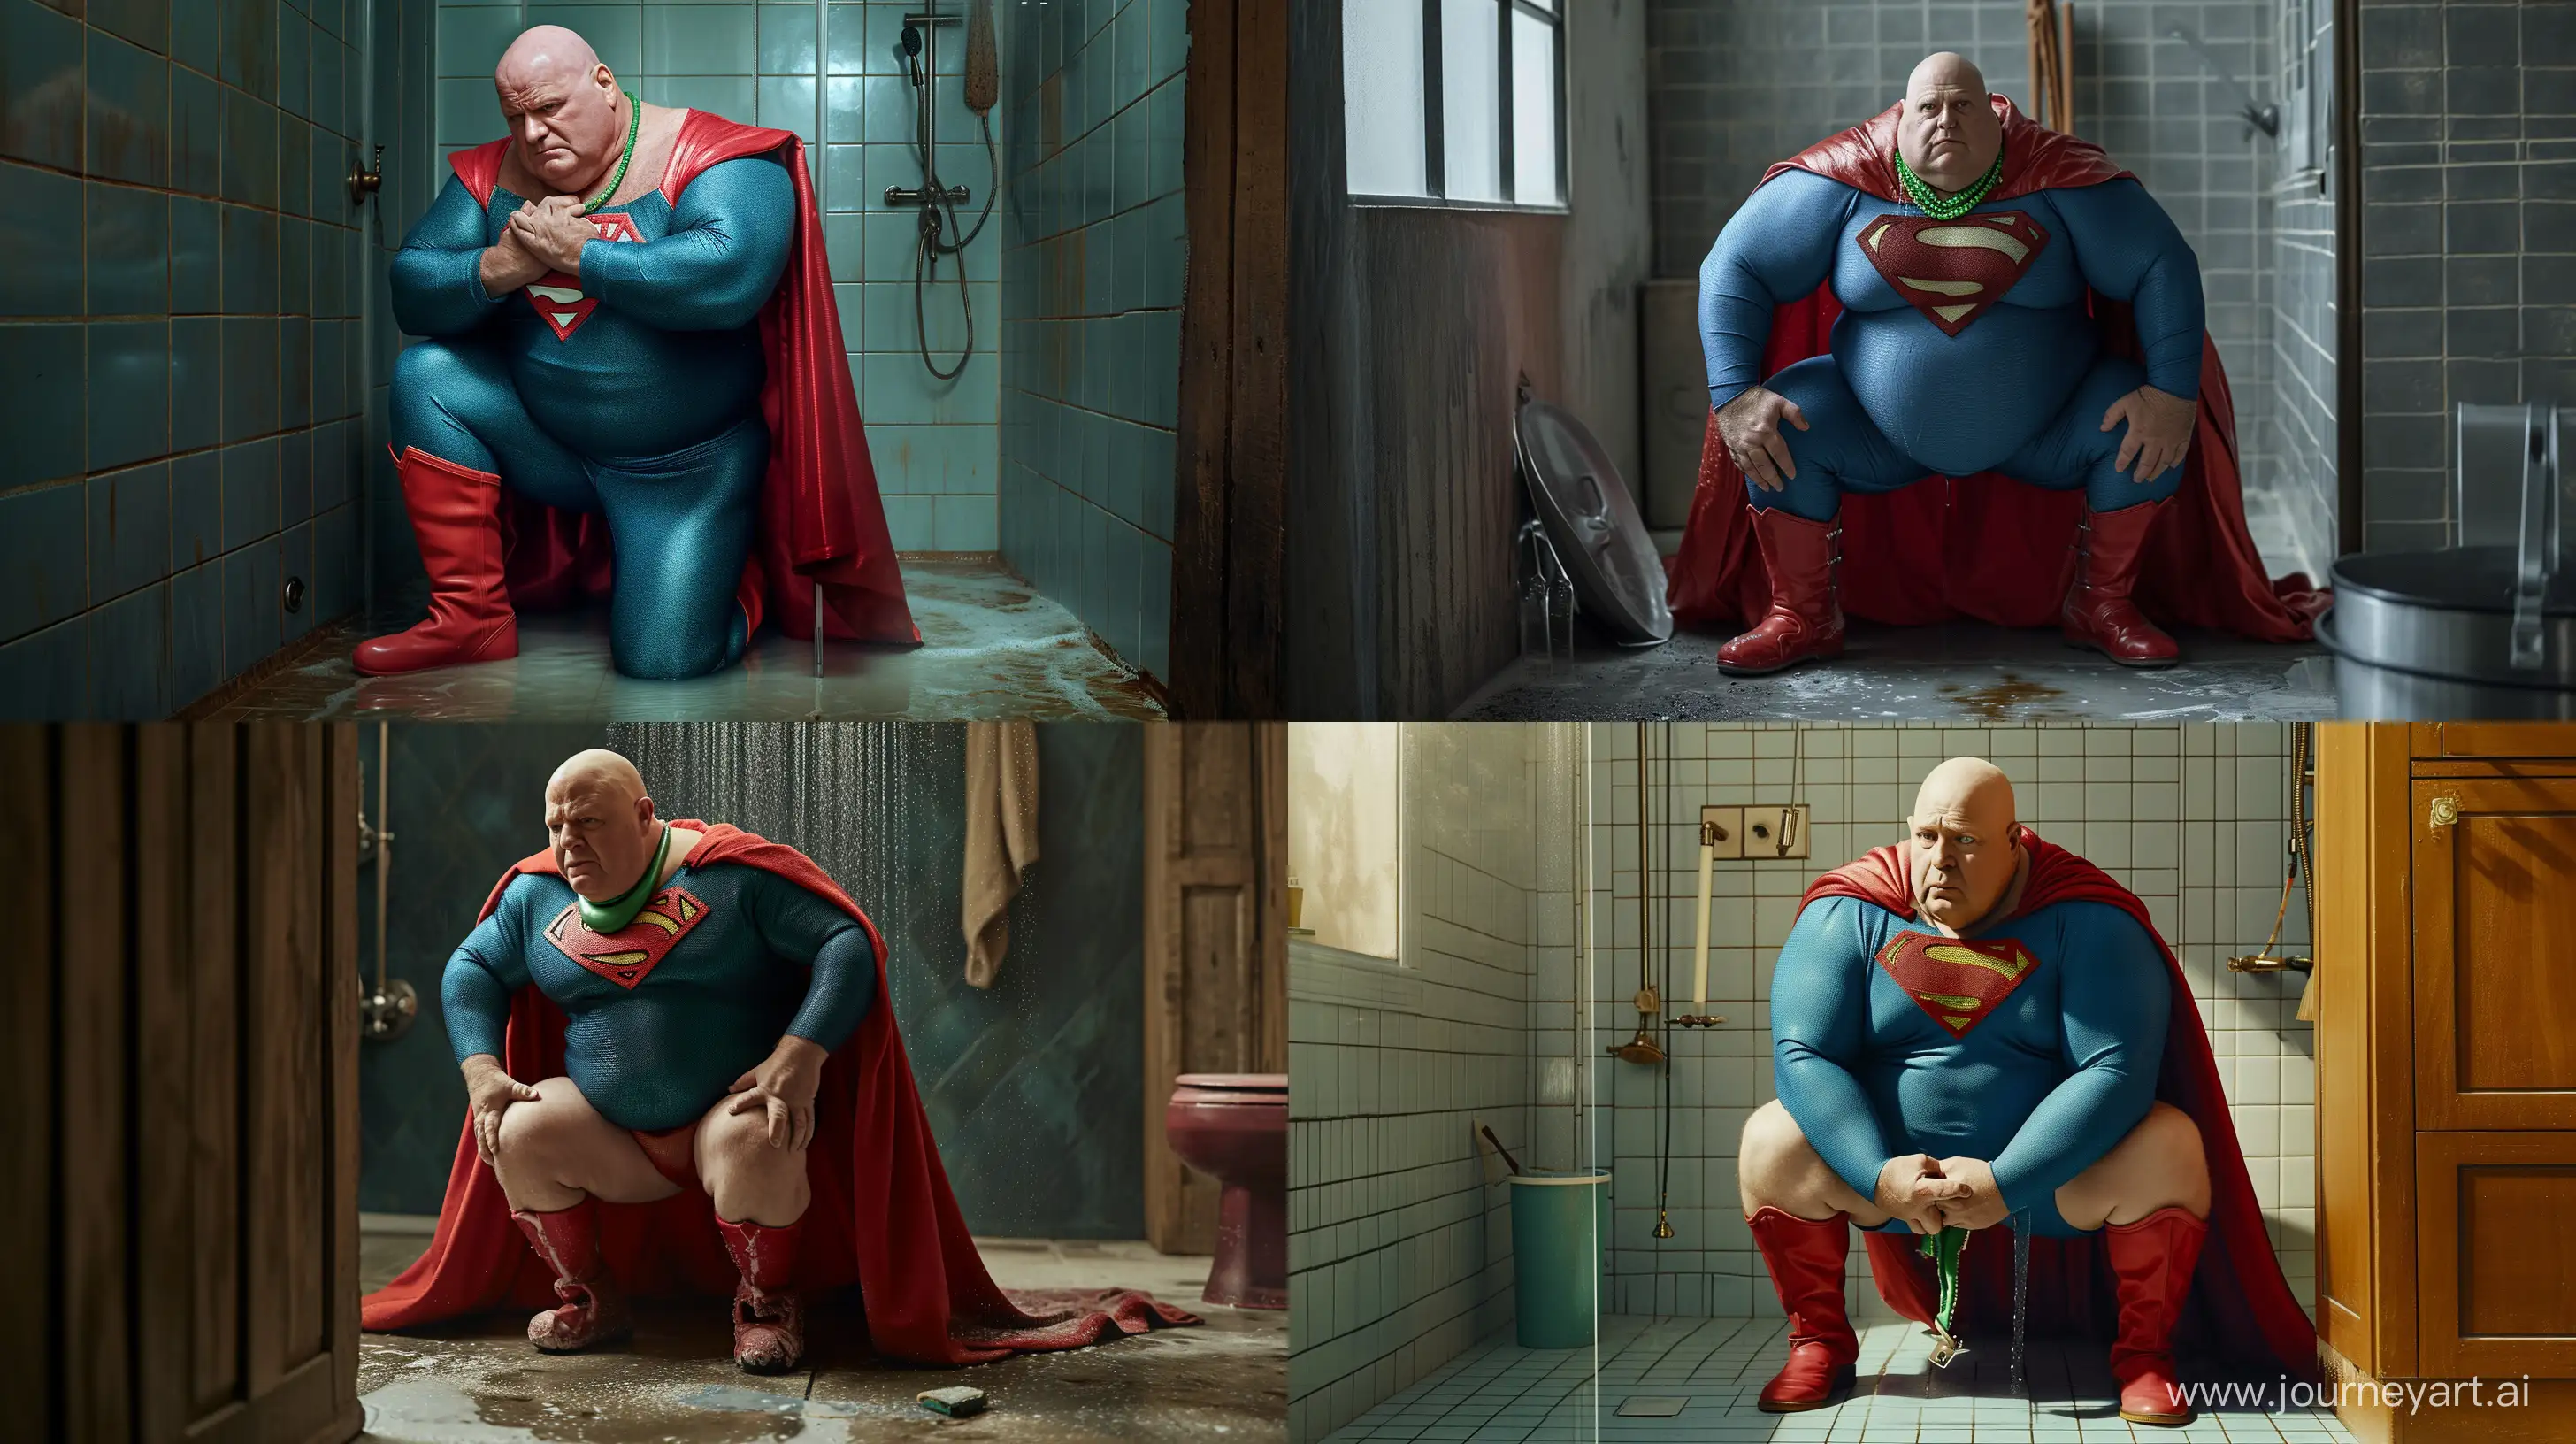 Elderly-Superman-Enjoys-Refreshing-Shower-in-Vibrant-Costume